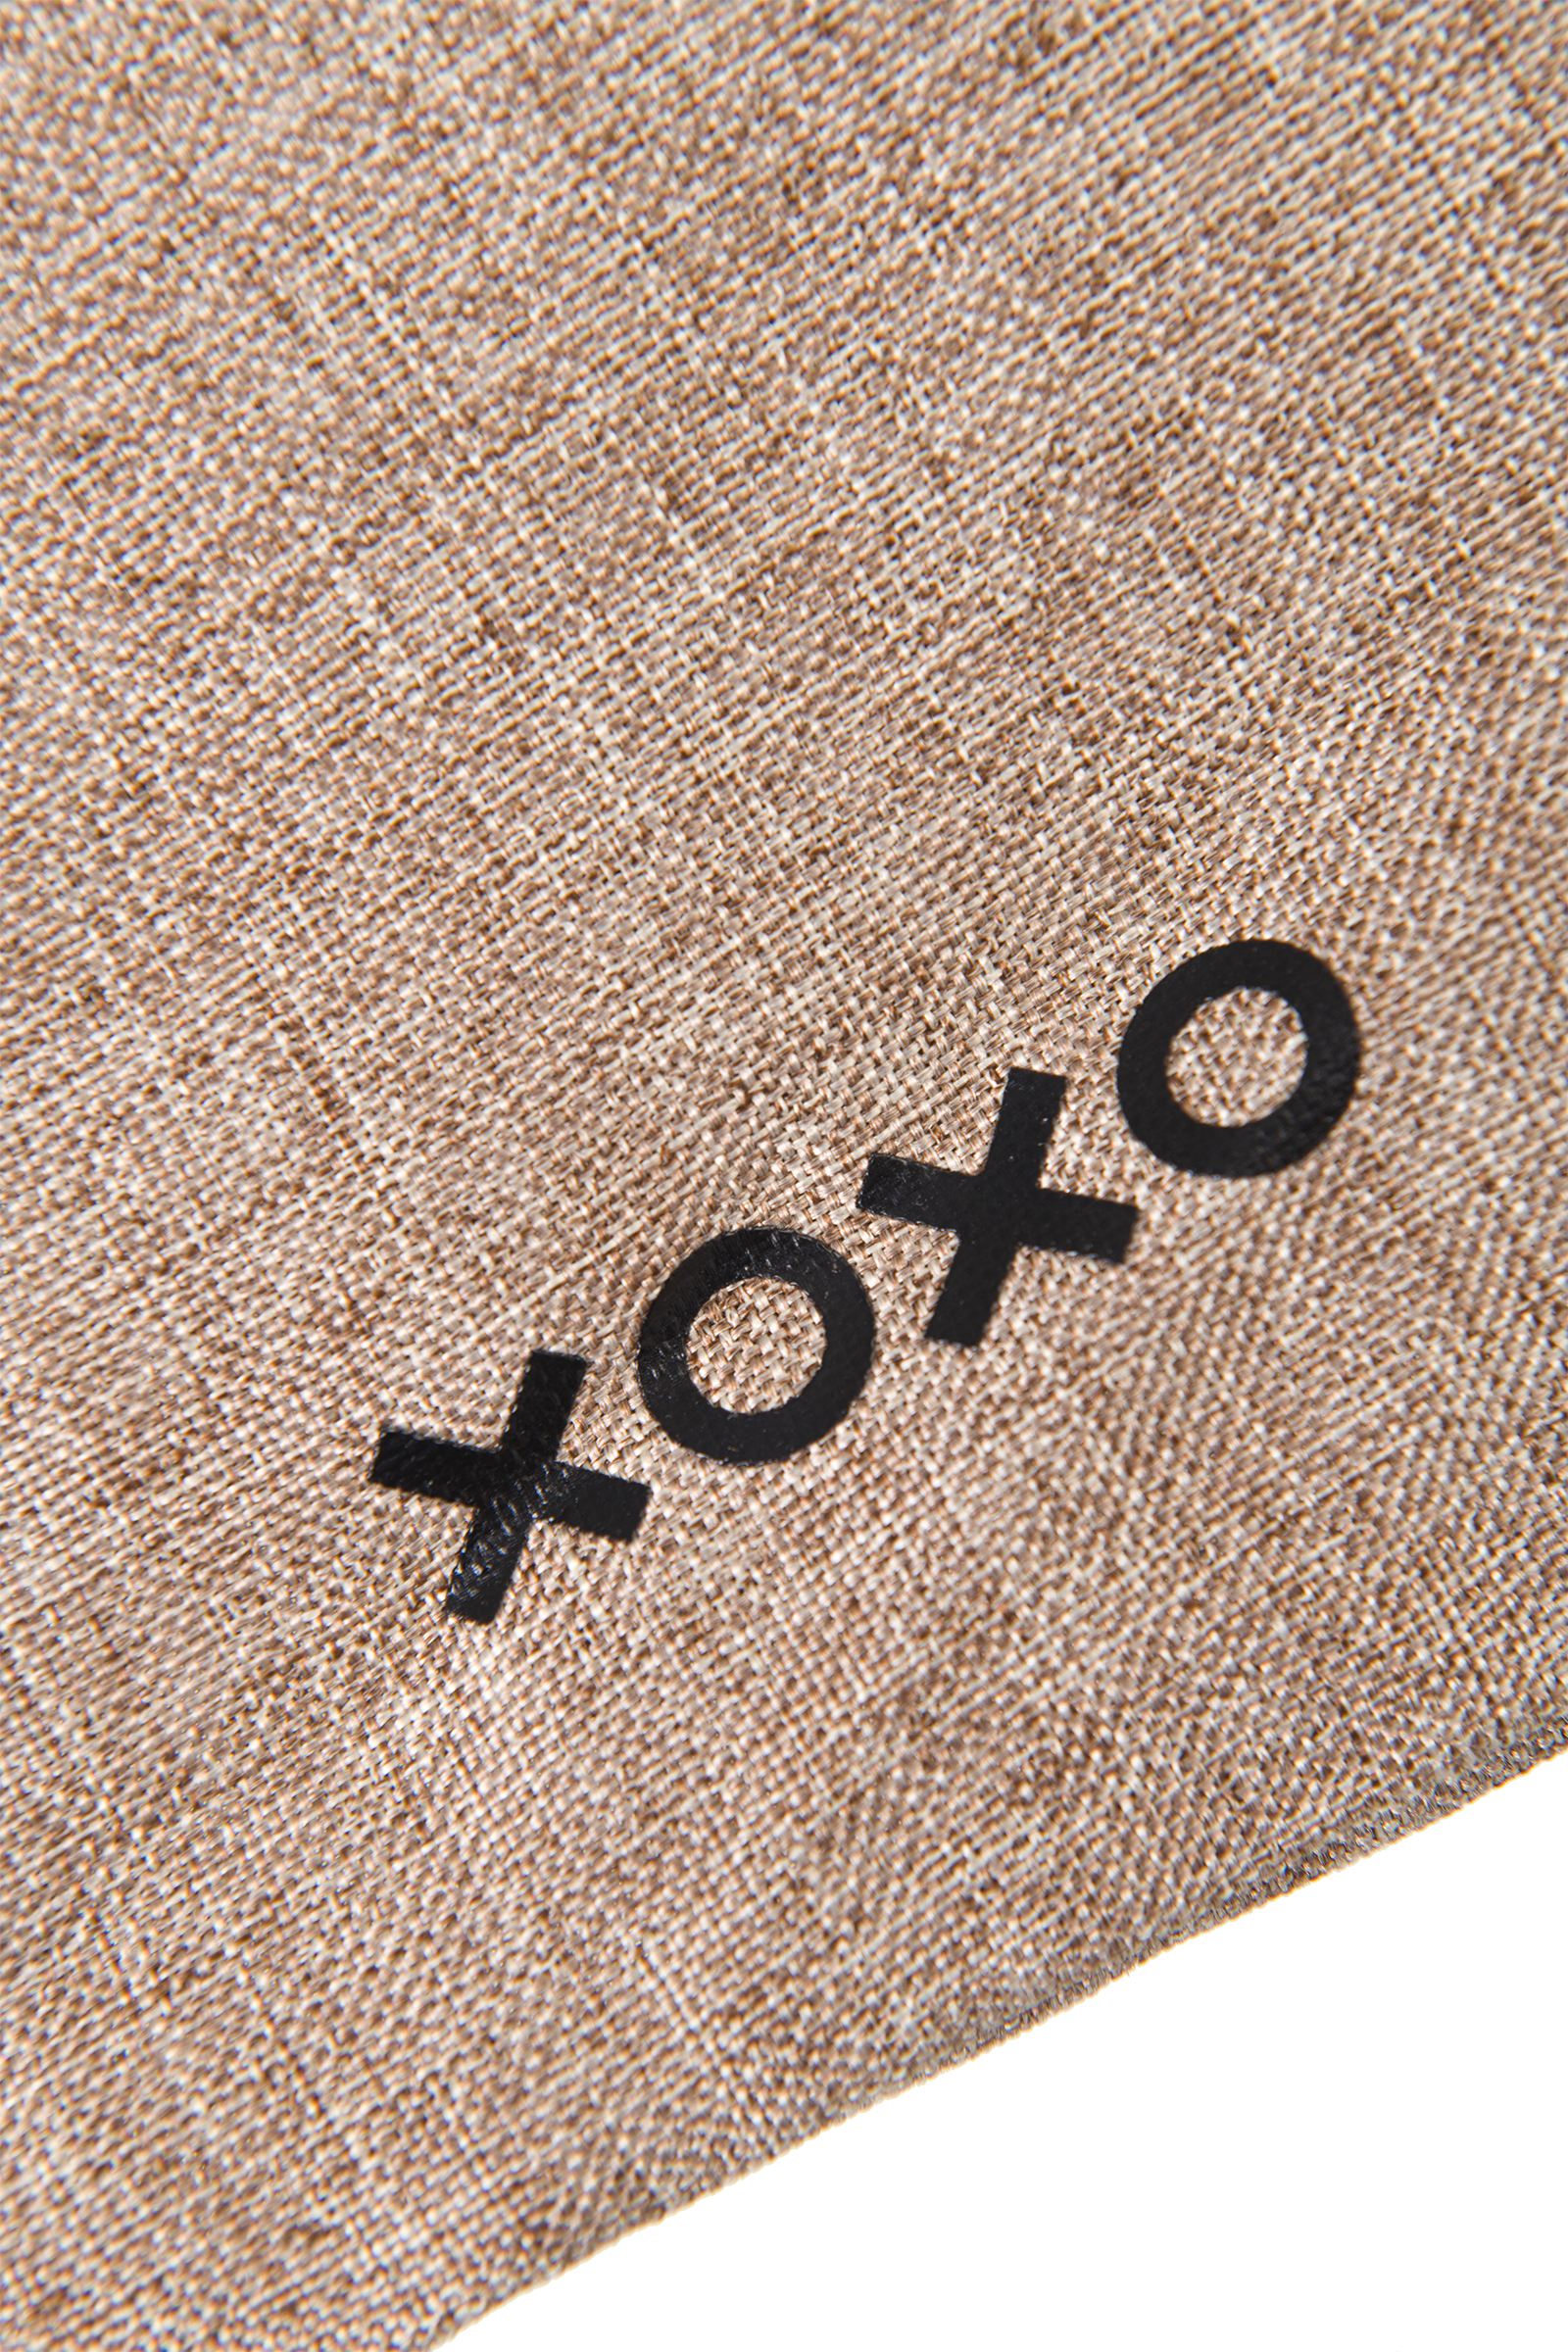 Мешочек XOXO для хранения секс-игрушек 24.5 см, коричневый